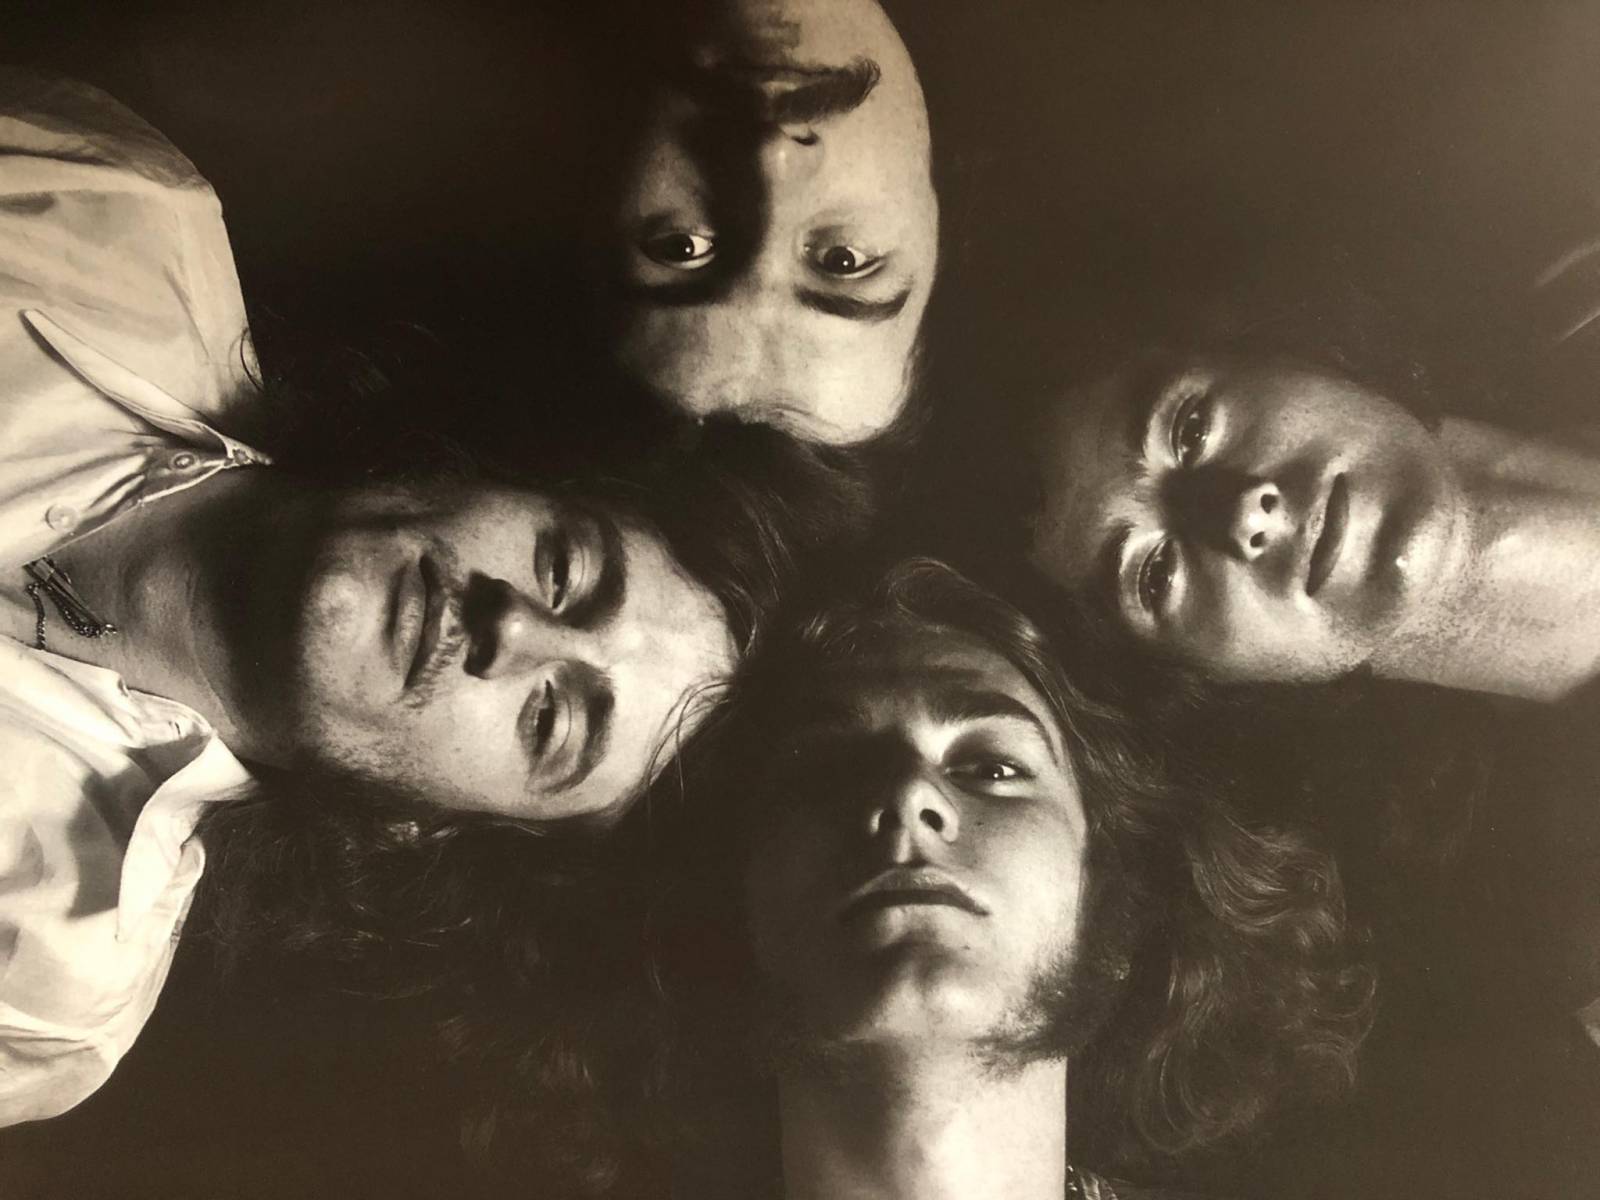 Okopírovali melodii písně, nebo ne? Led Zeppelin zamíří se Stairway To Heaven opět k soudu